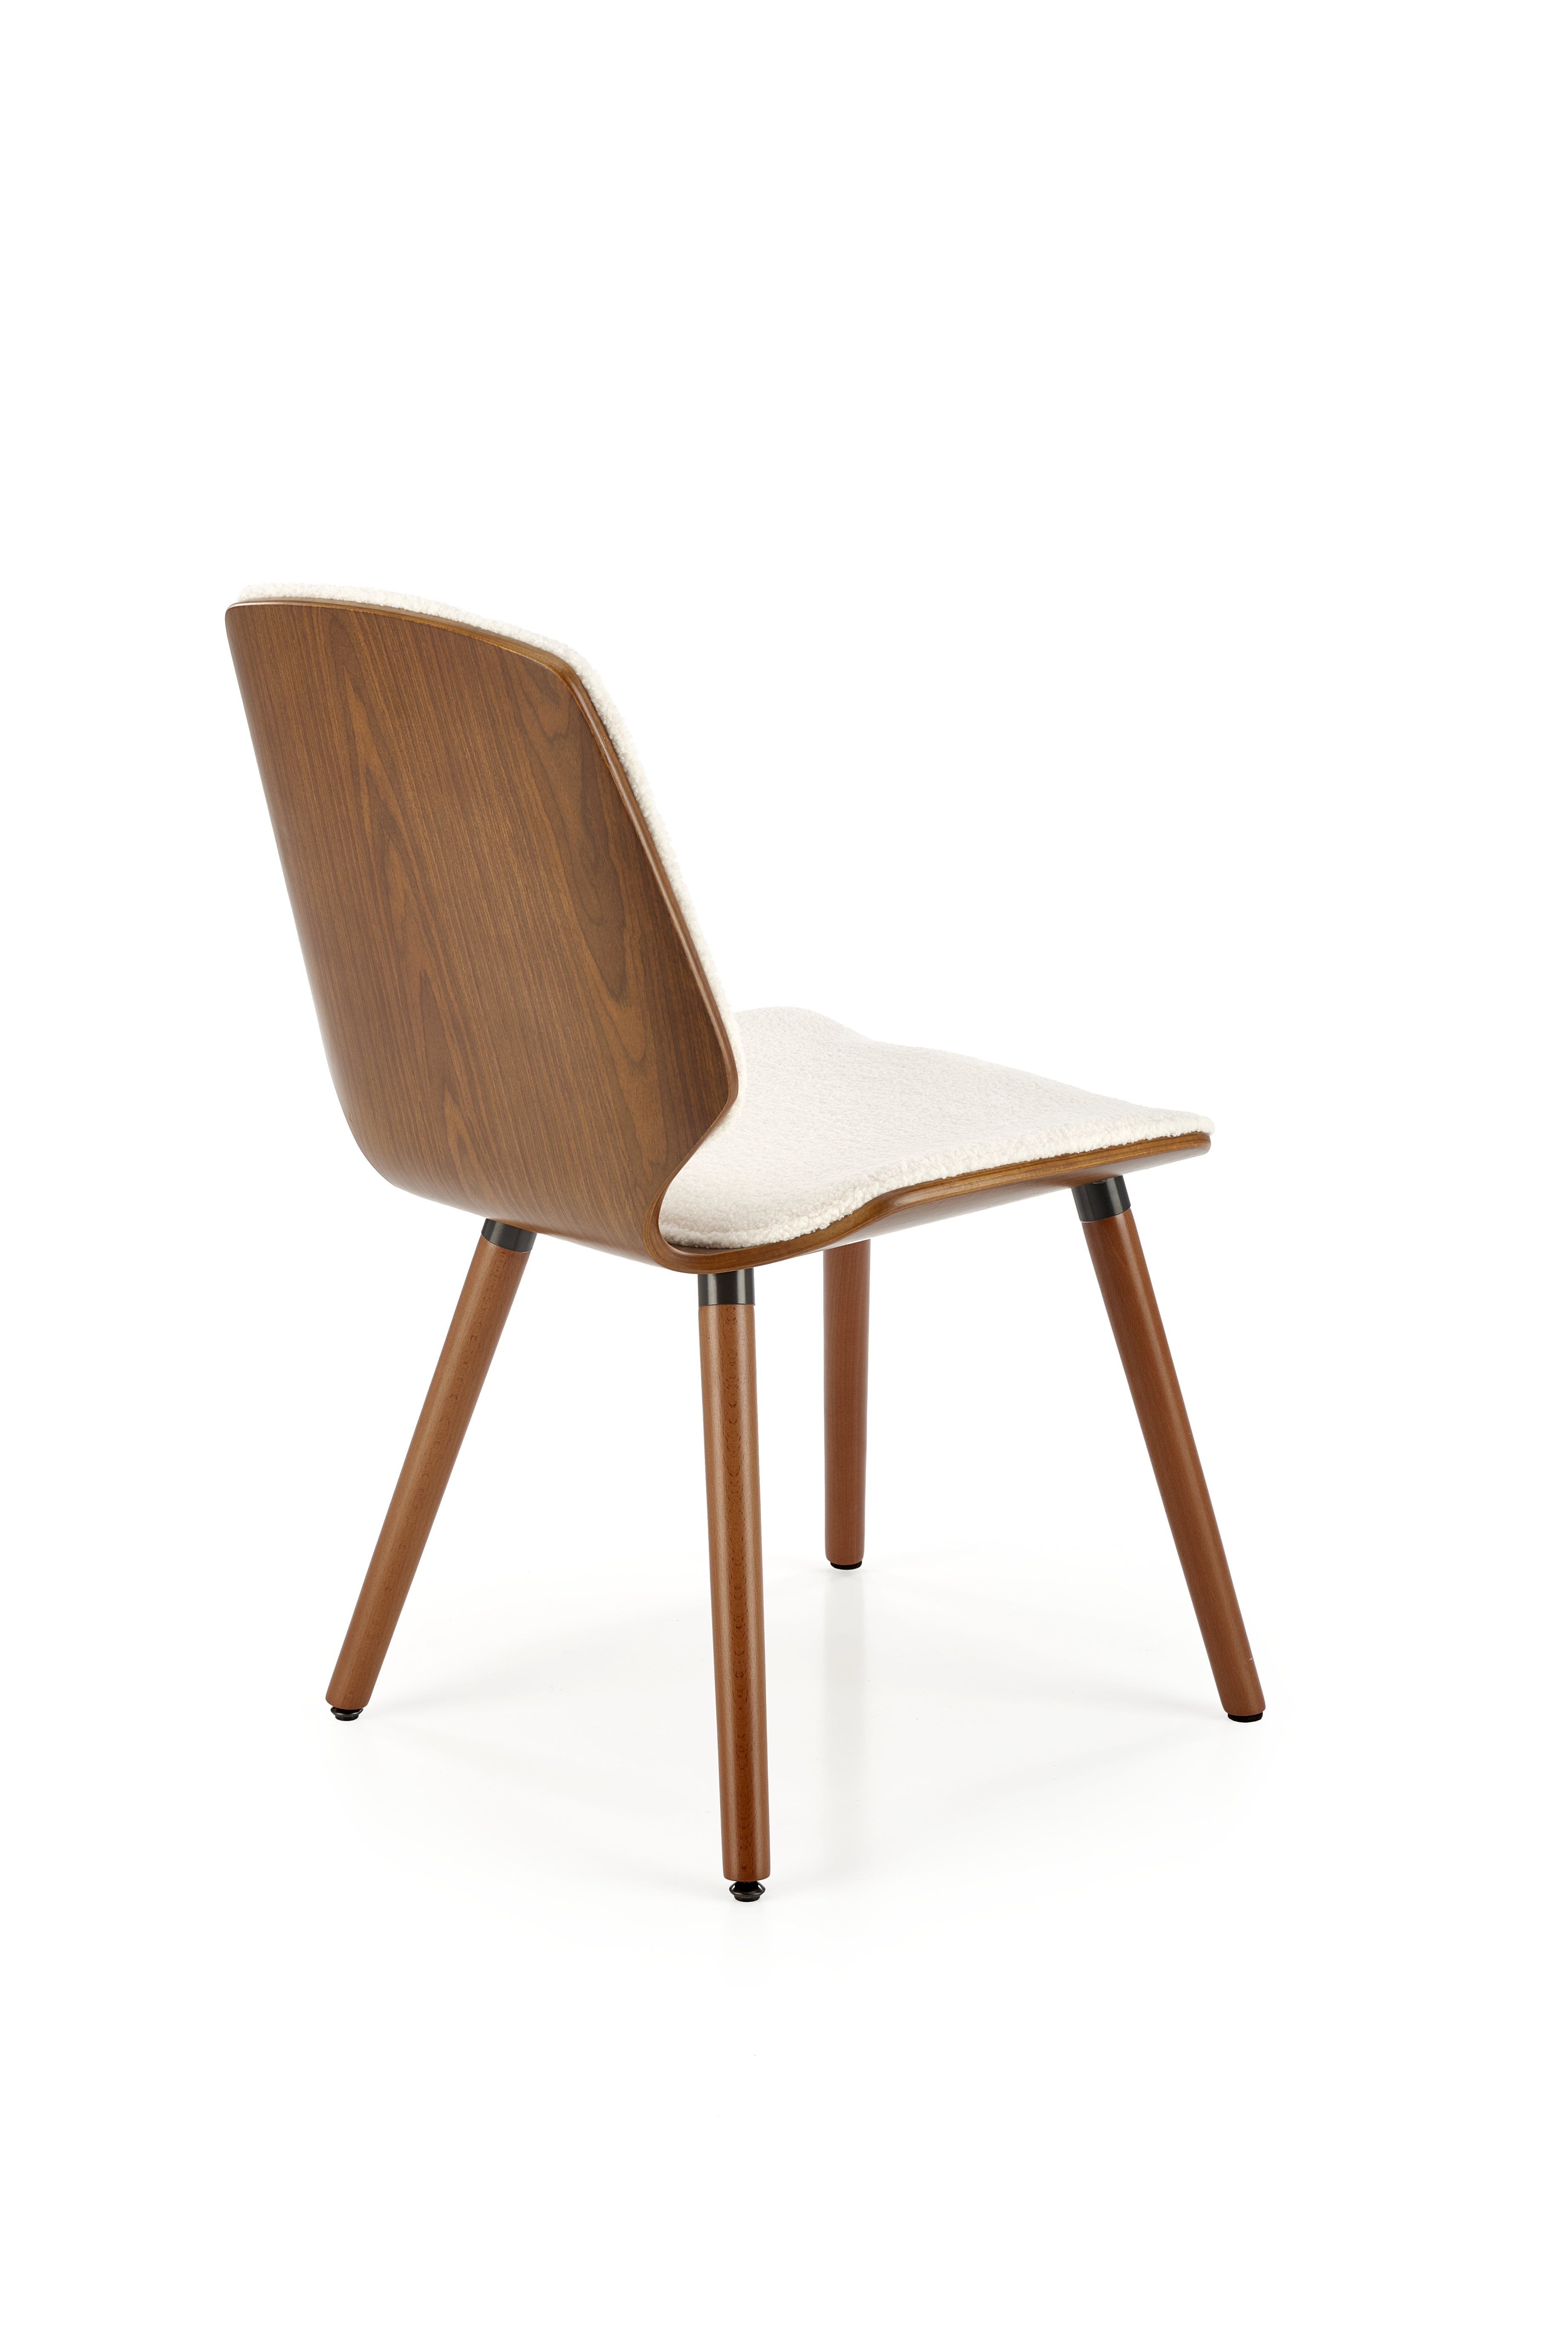 K511 Židle Krémový / ořechový Židle fából k511 - Krémový / ořechový